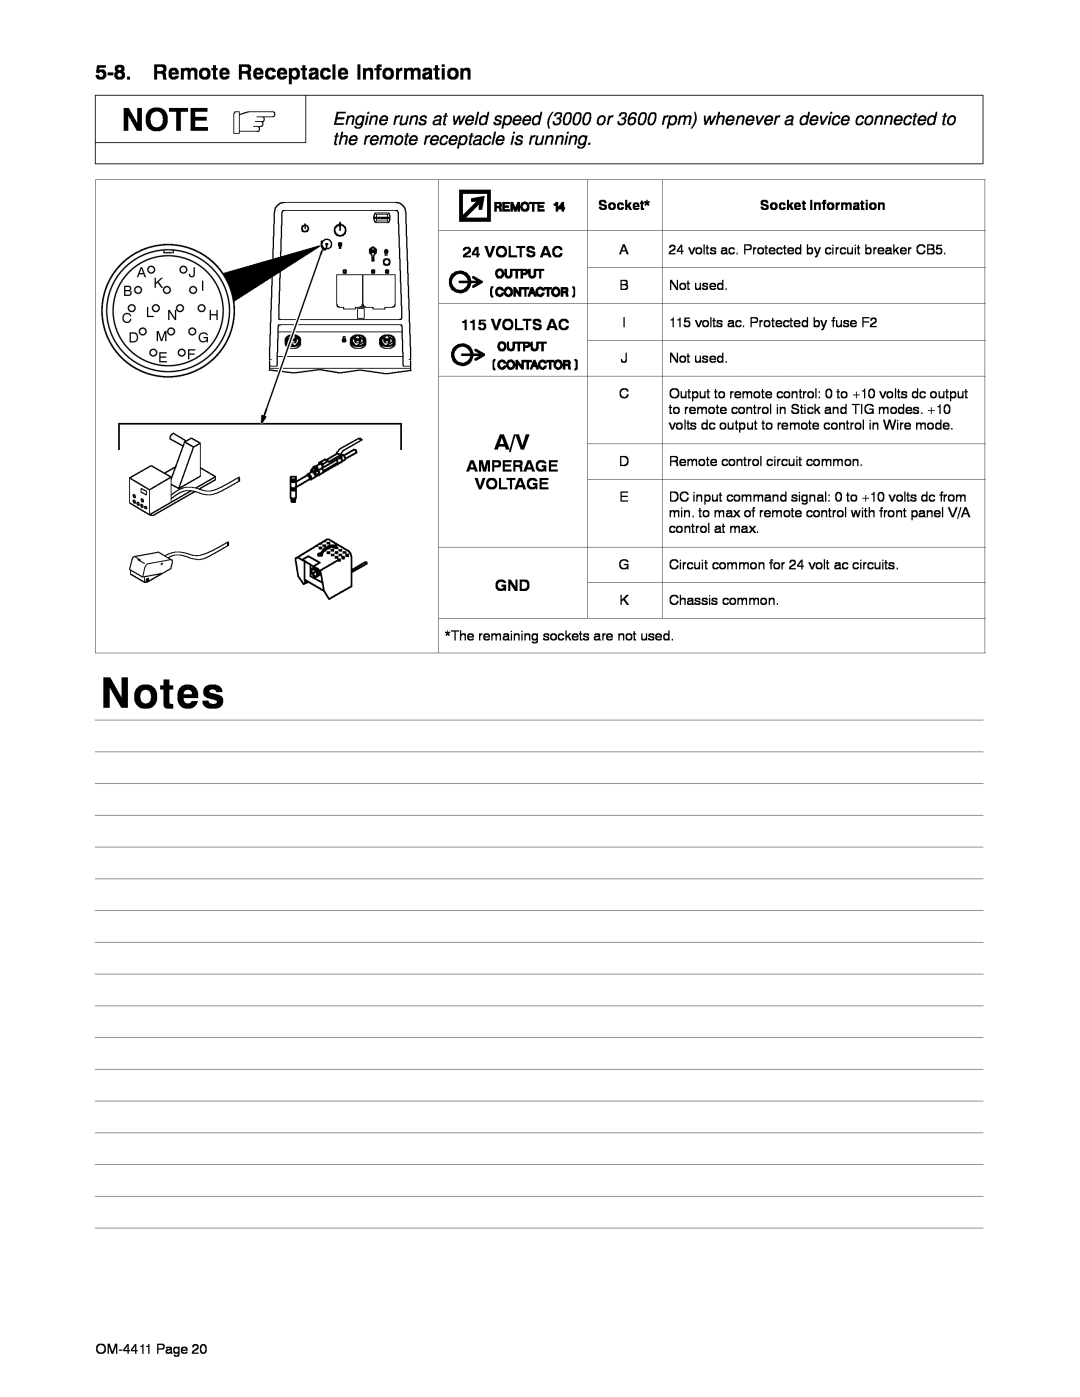 Miller Electric 301 G manual Remote Receptacle Information, Volts Ac, Amperage, Voltage, Socket Information 